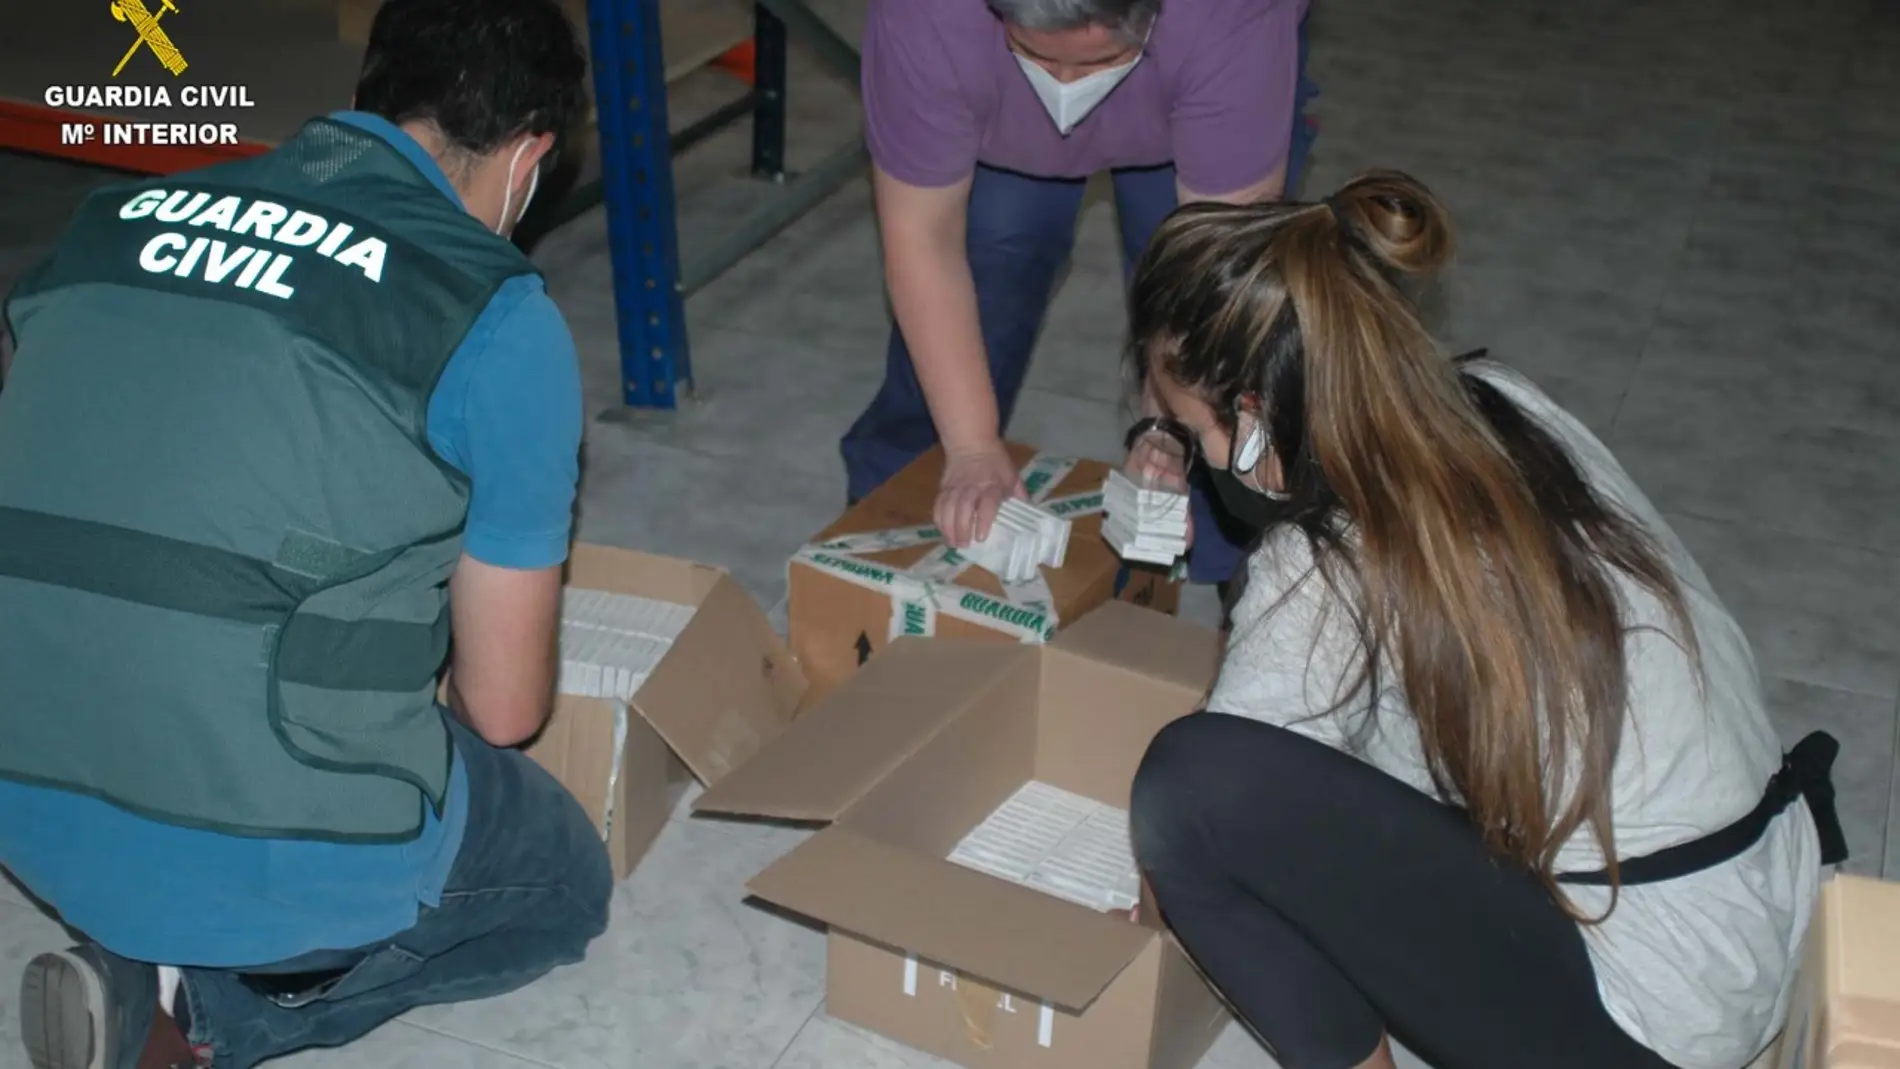 La Guardia Civil se incauta en Gijón de 935 cajas del medicamento ilegal "Rhodicomp"